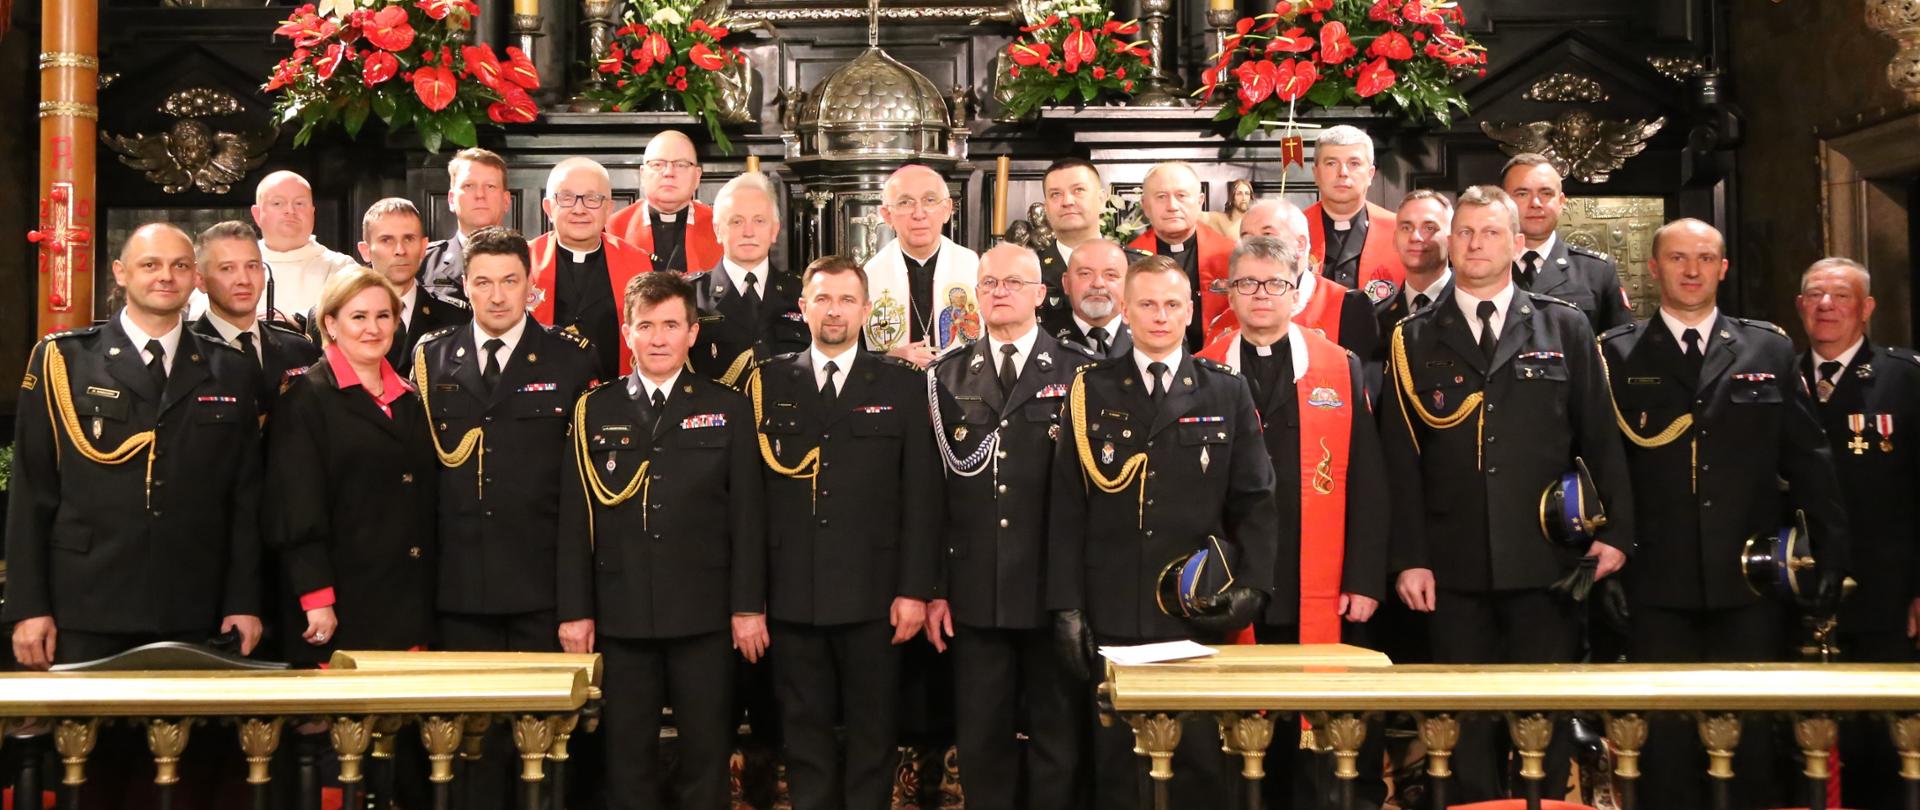 Grupowe zdjęcie uczestników uroczystej mszy (strażacy oraz duchowni) na tle obrazu NMP